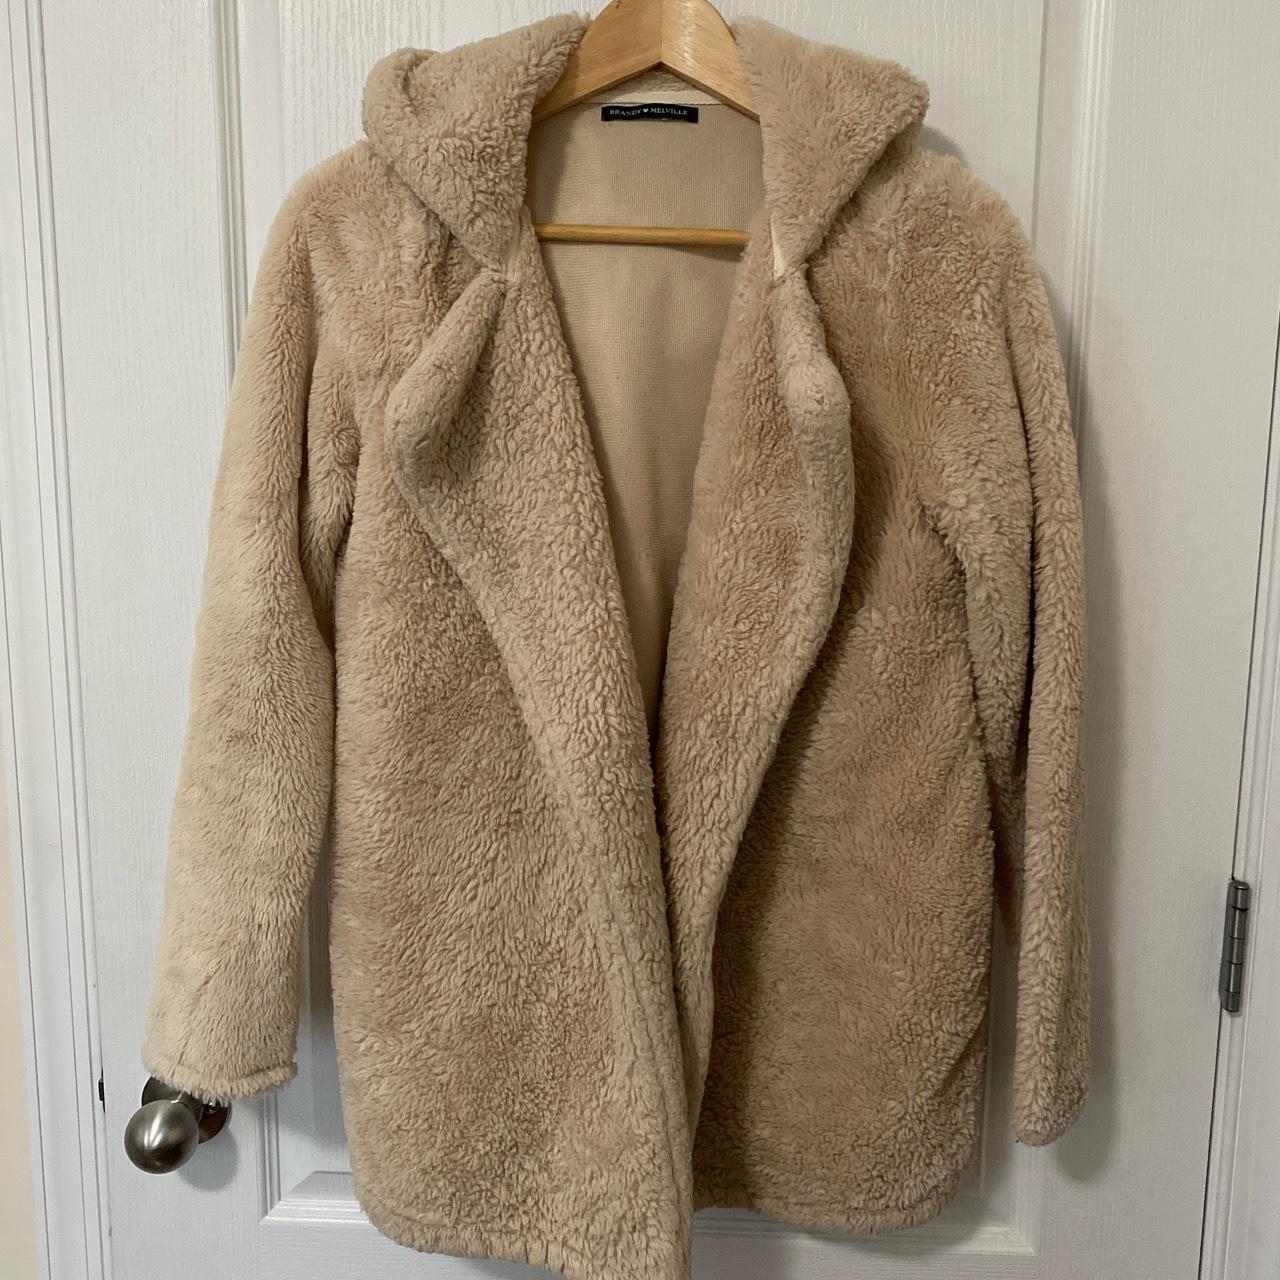 brandy melville faux fur teddy bear jacket (open... - Depop